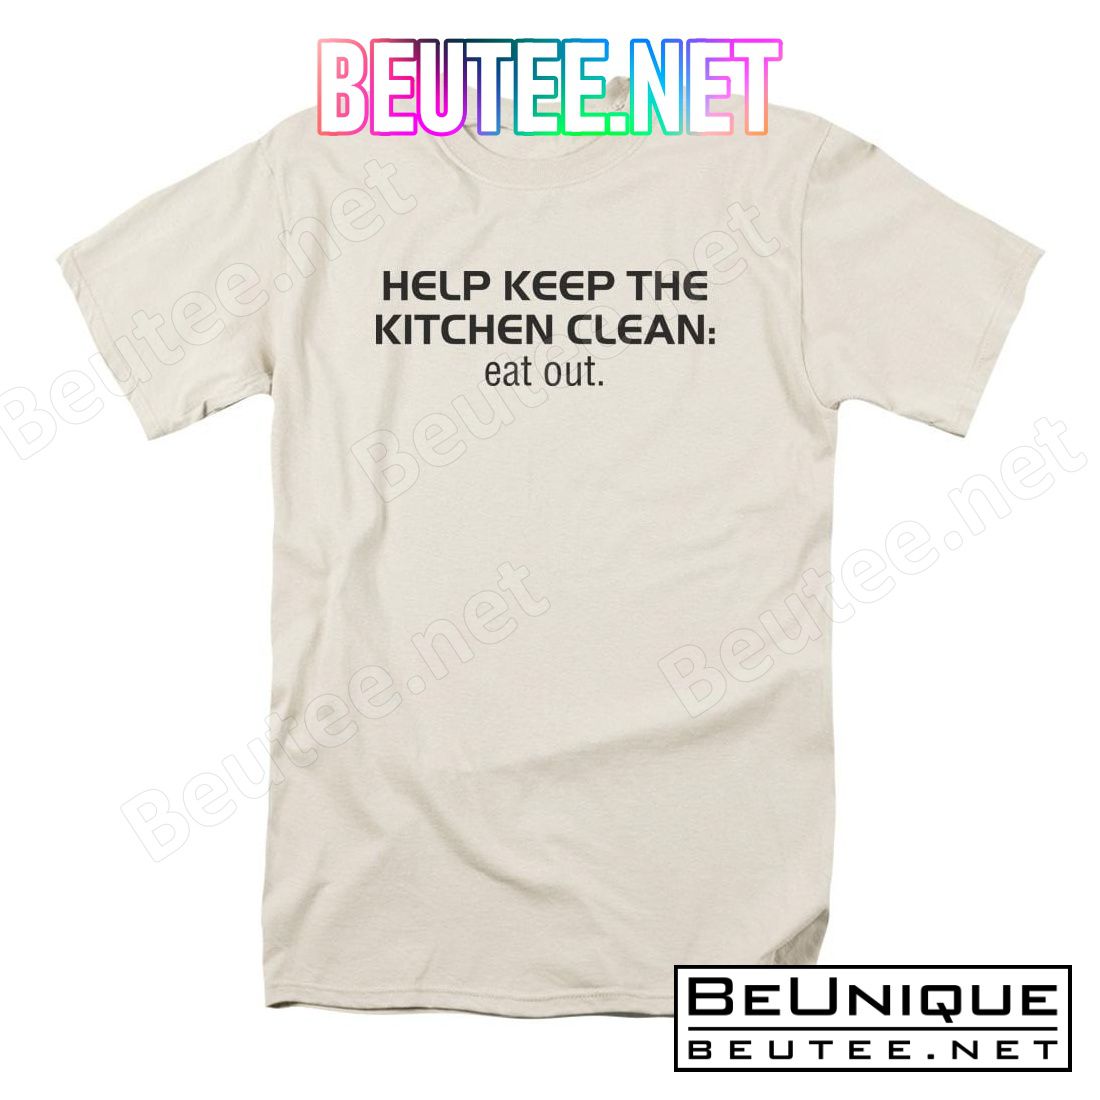 Clean Kitchen Shirt